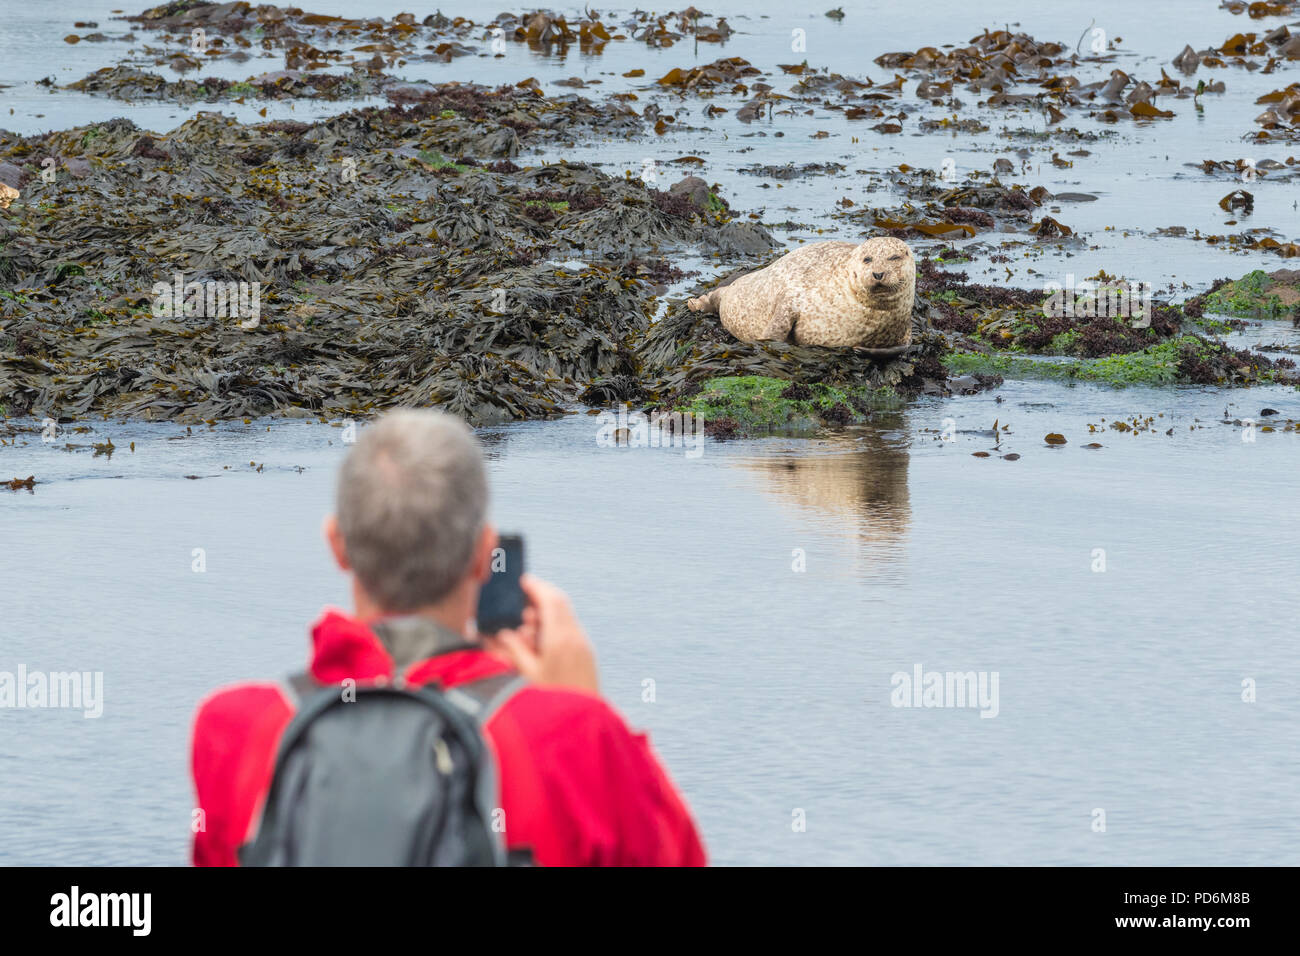 Dichtung, die in Schottland - Mann ein Foto von einem Seehund (Phoca vitulina) bei Machrihanish, Kintyre, Schottland, Großbritannien Stockfoto